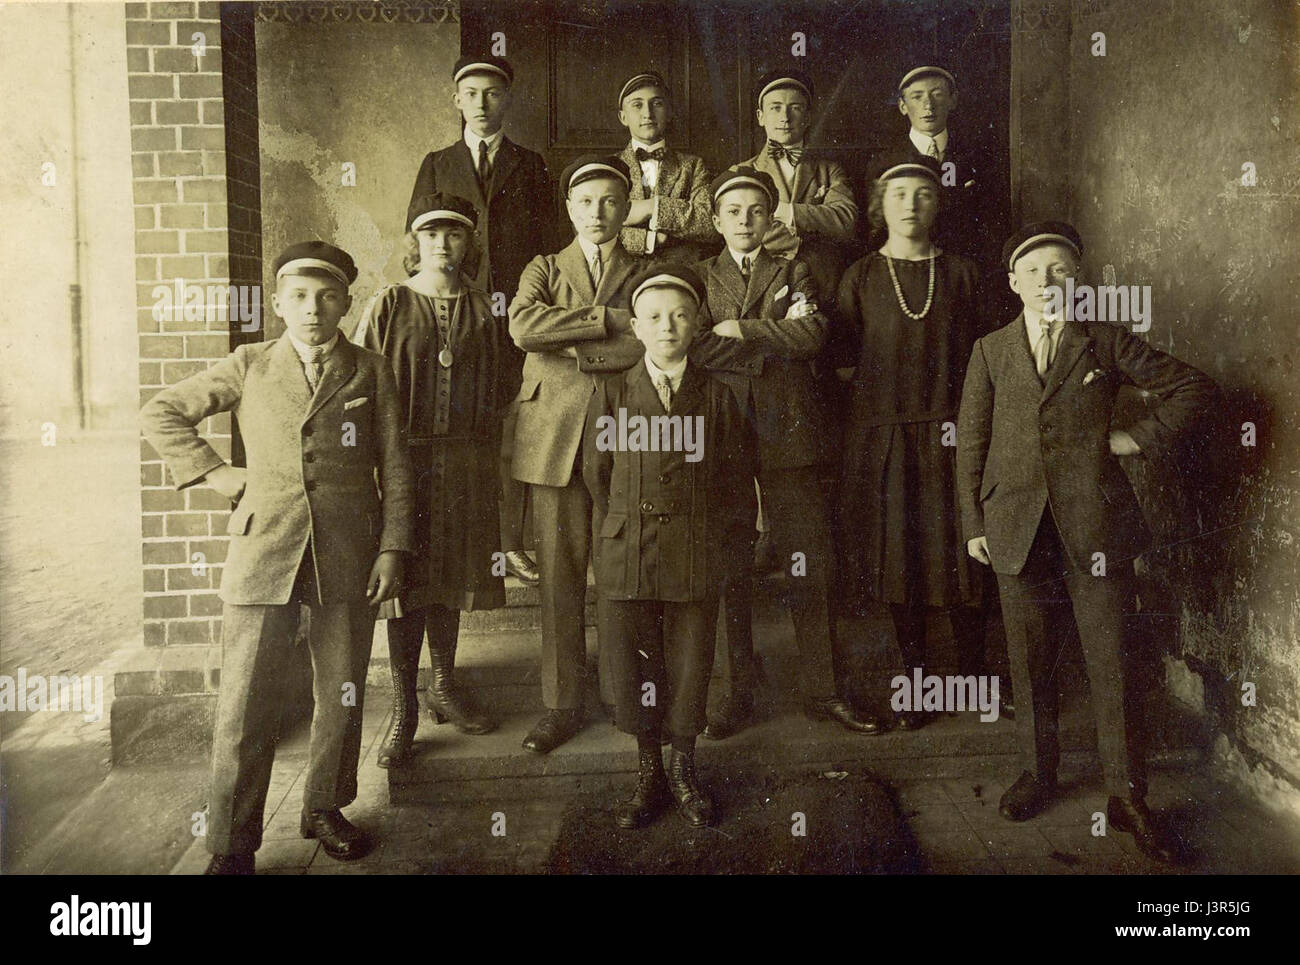 Klassenfotoeiner hessischen Oberschule 1920er Jahre Stock Photo